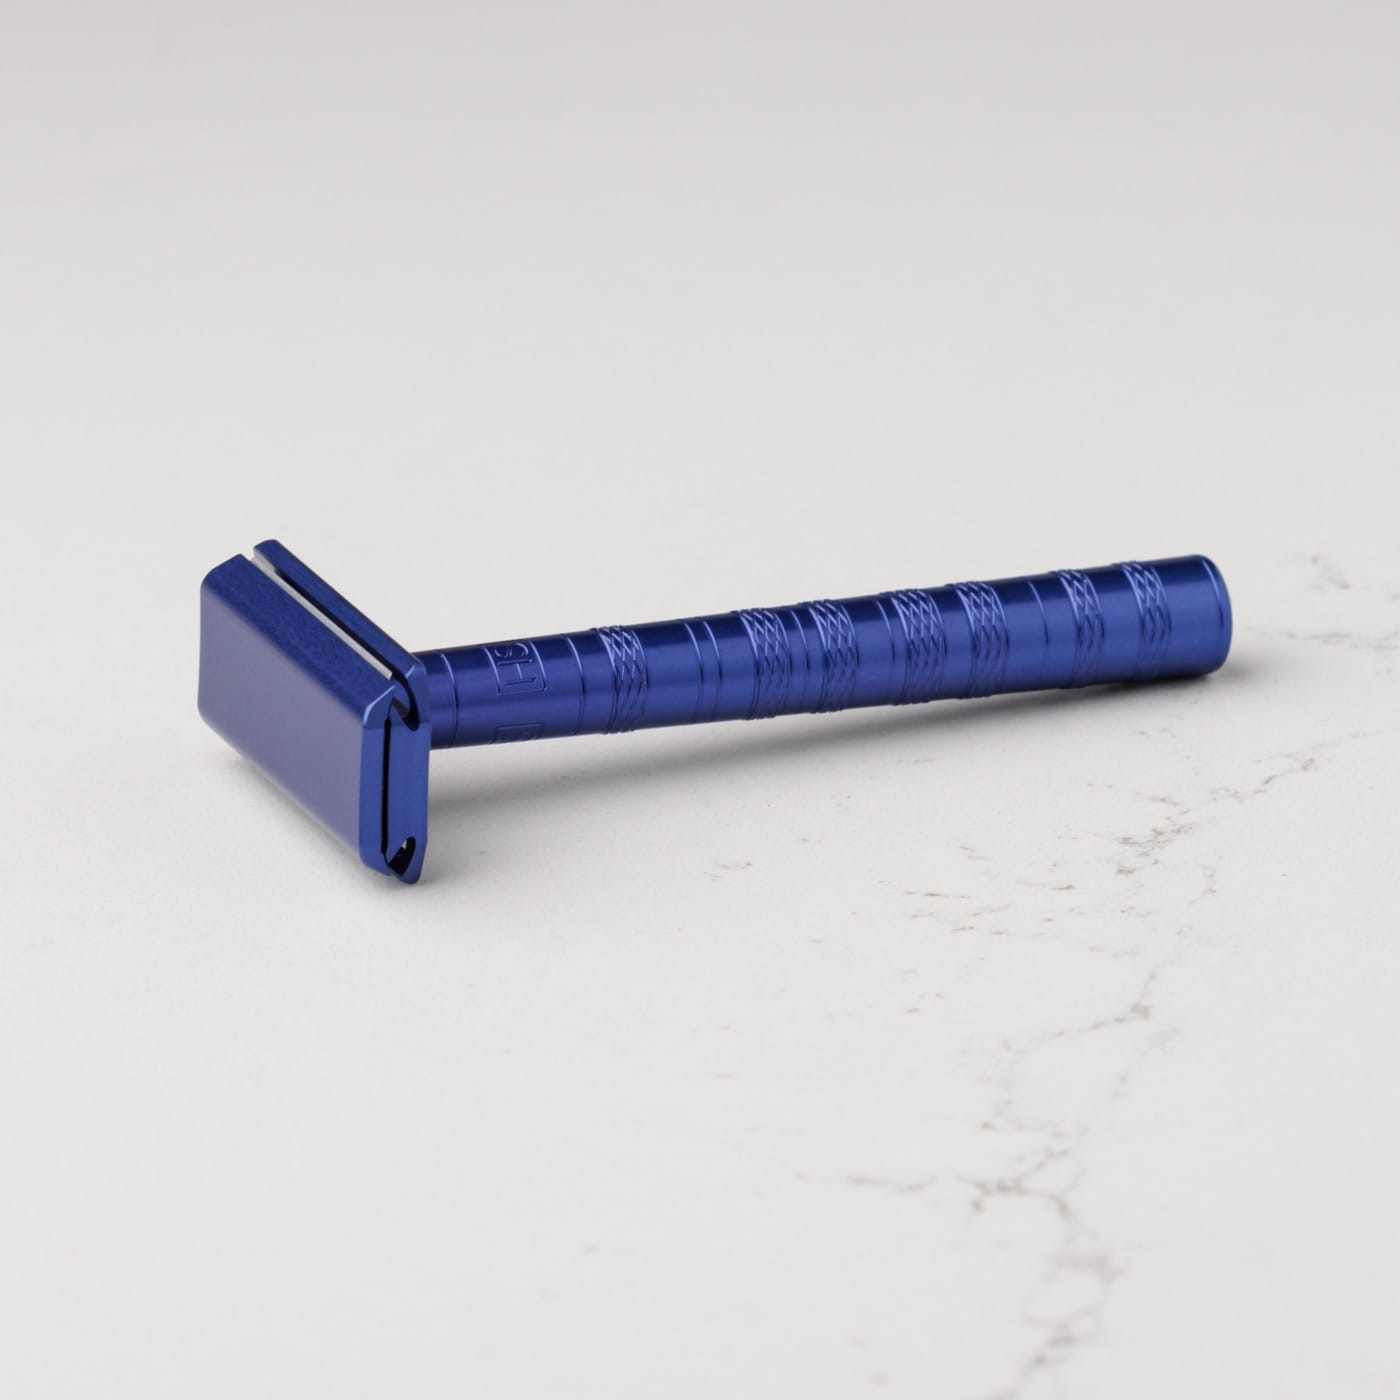 Henson Shaving Safety Razor AL13 Medium Steel Blue - 1.3 - HS-914771